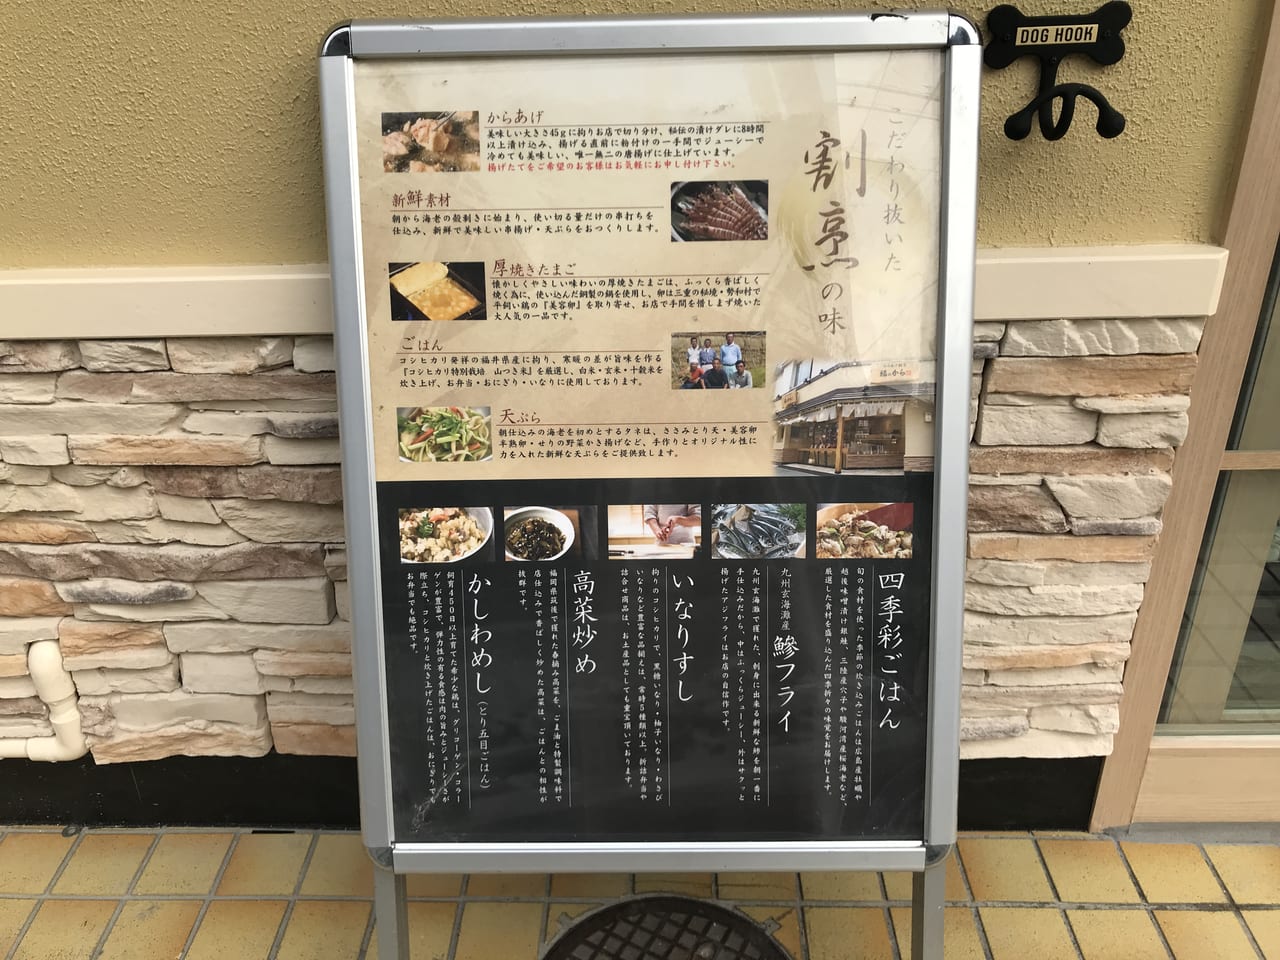 世田谷区尾山台「からあげ割烹福のから尾山台店」が道を挟んで反対側に移転2022年3月3日ひな祭りの日にリニューアルオープンします。